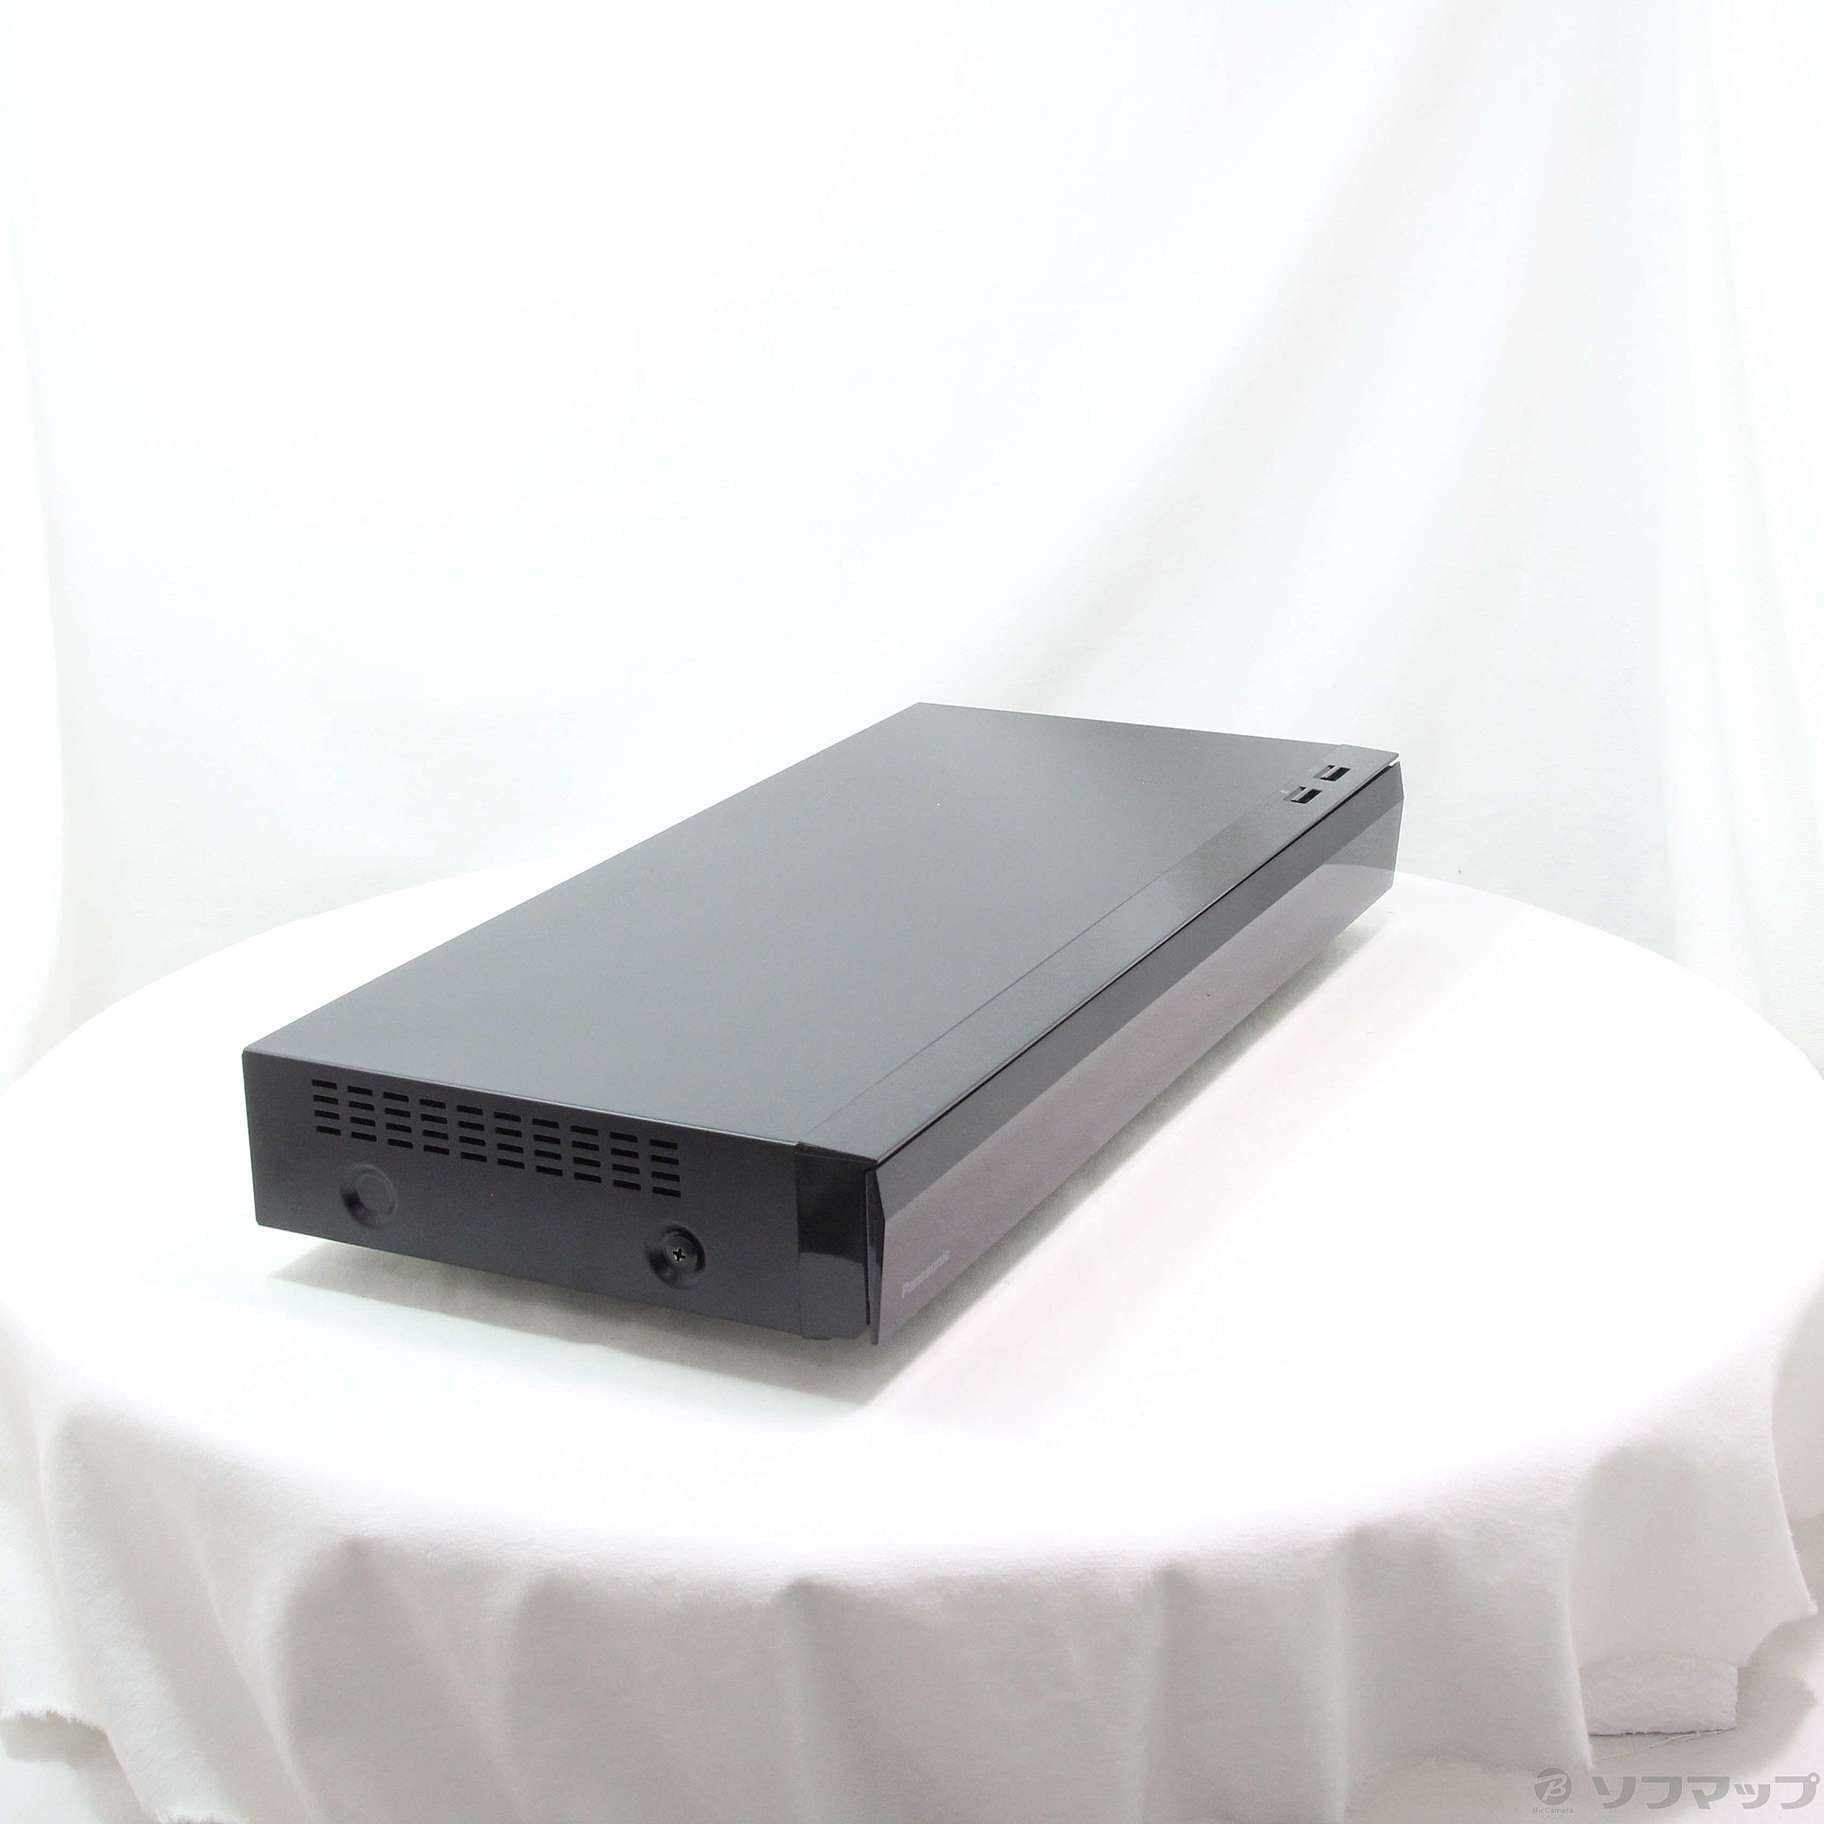 新品 パナソニック DMR-4W100 4Kチューナー内蔵 ブルーレイレコーダー